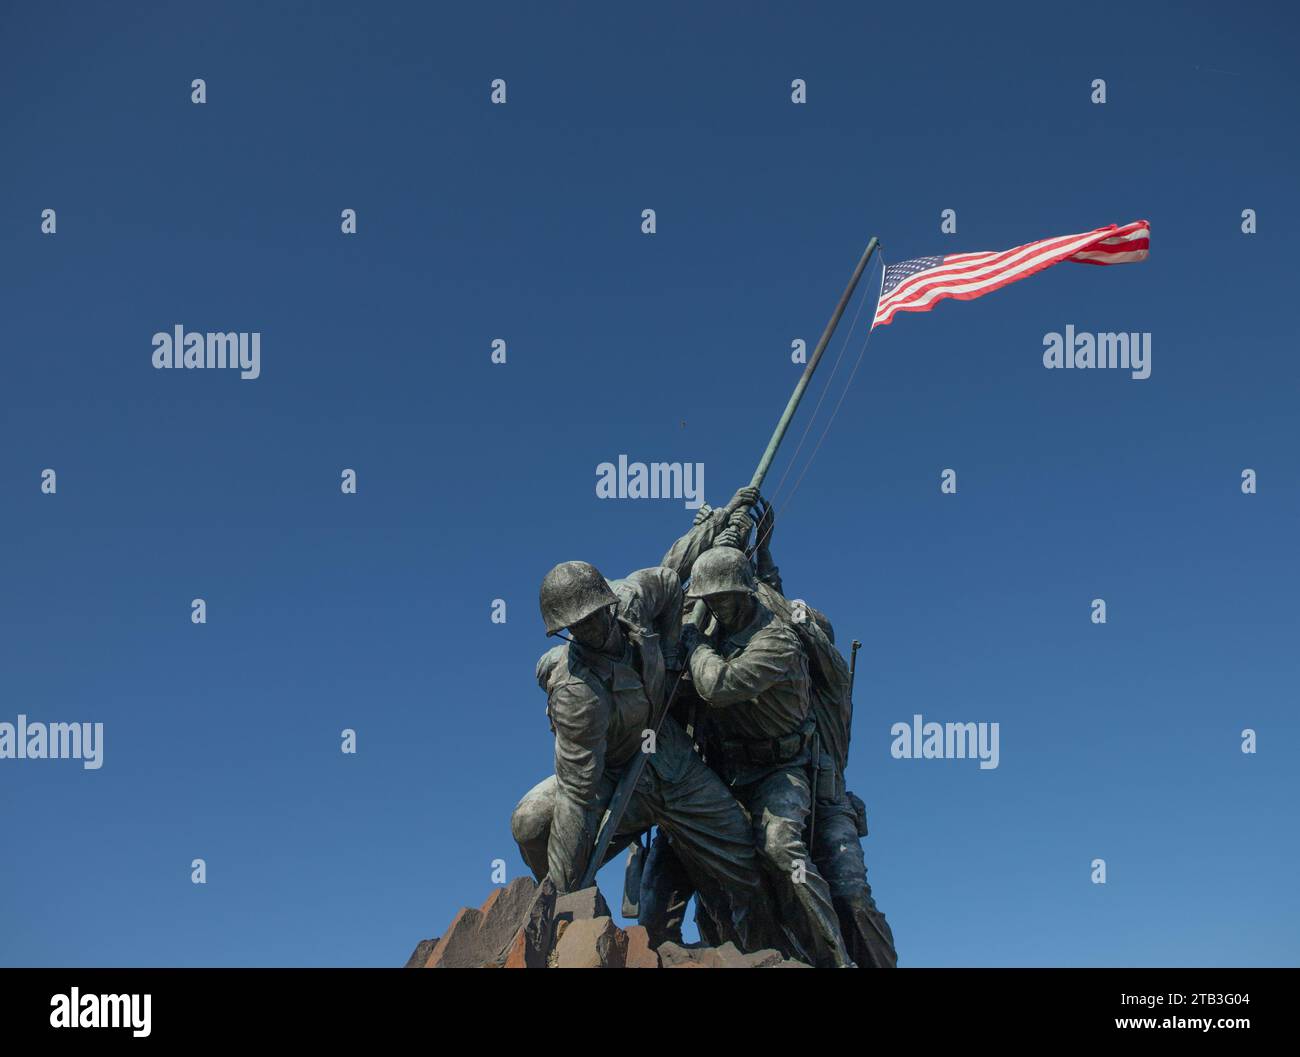 Le mémorial de guerre du corps des Marines des États-Unis (Iwo Jima Memorial) est un mémorial national situé dans le comté d'Arlington, en Virginie. Le mémorial était dedicat Banque D'Images